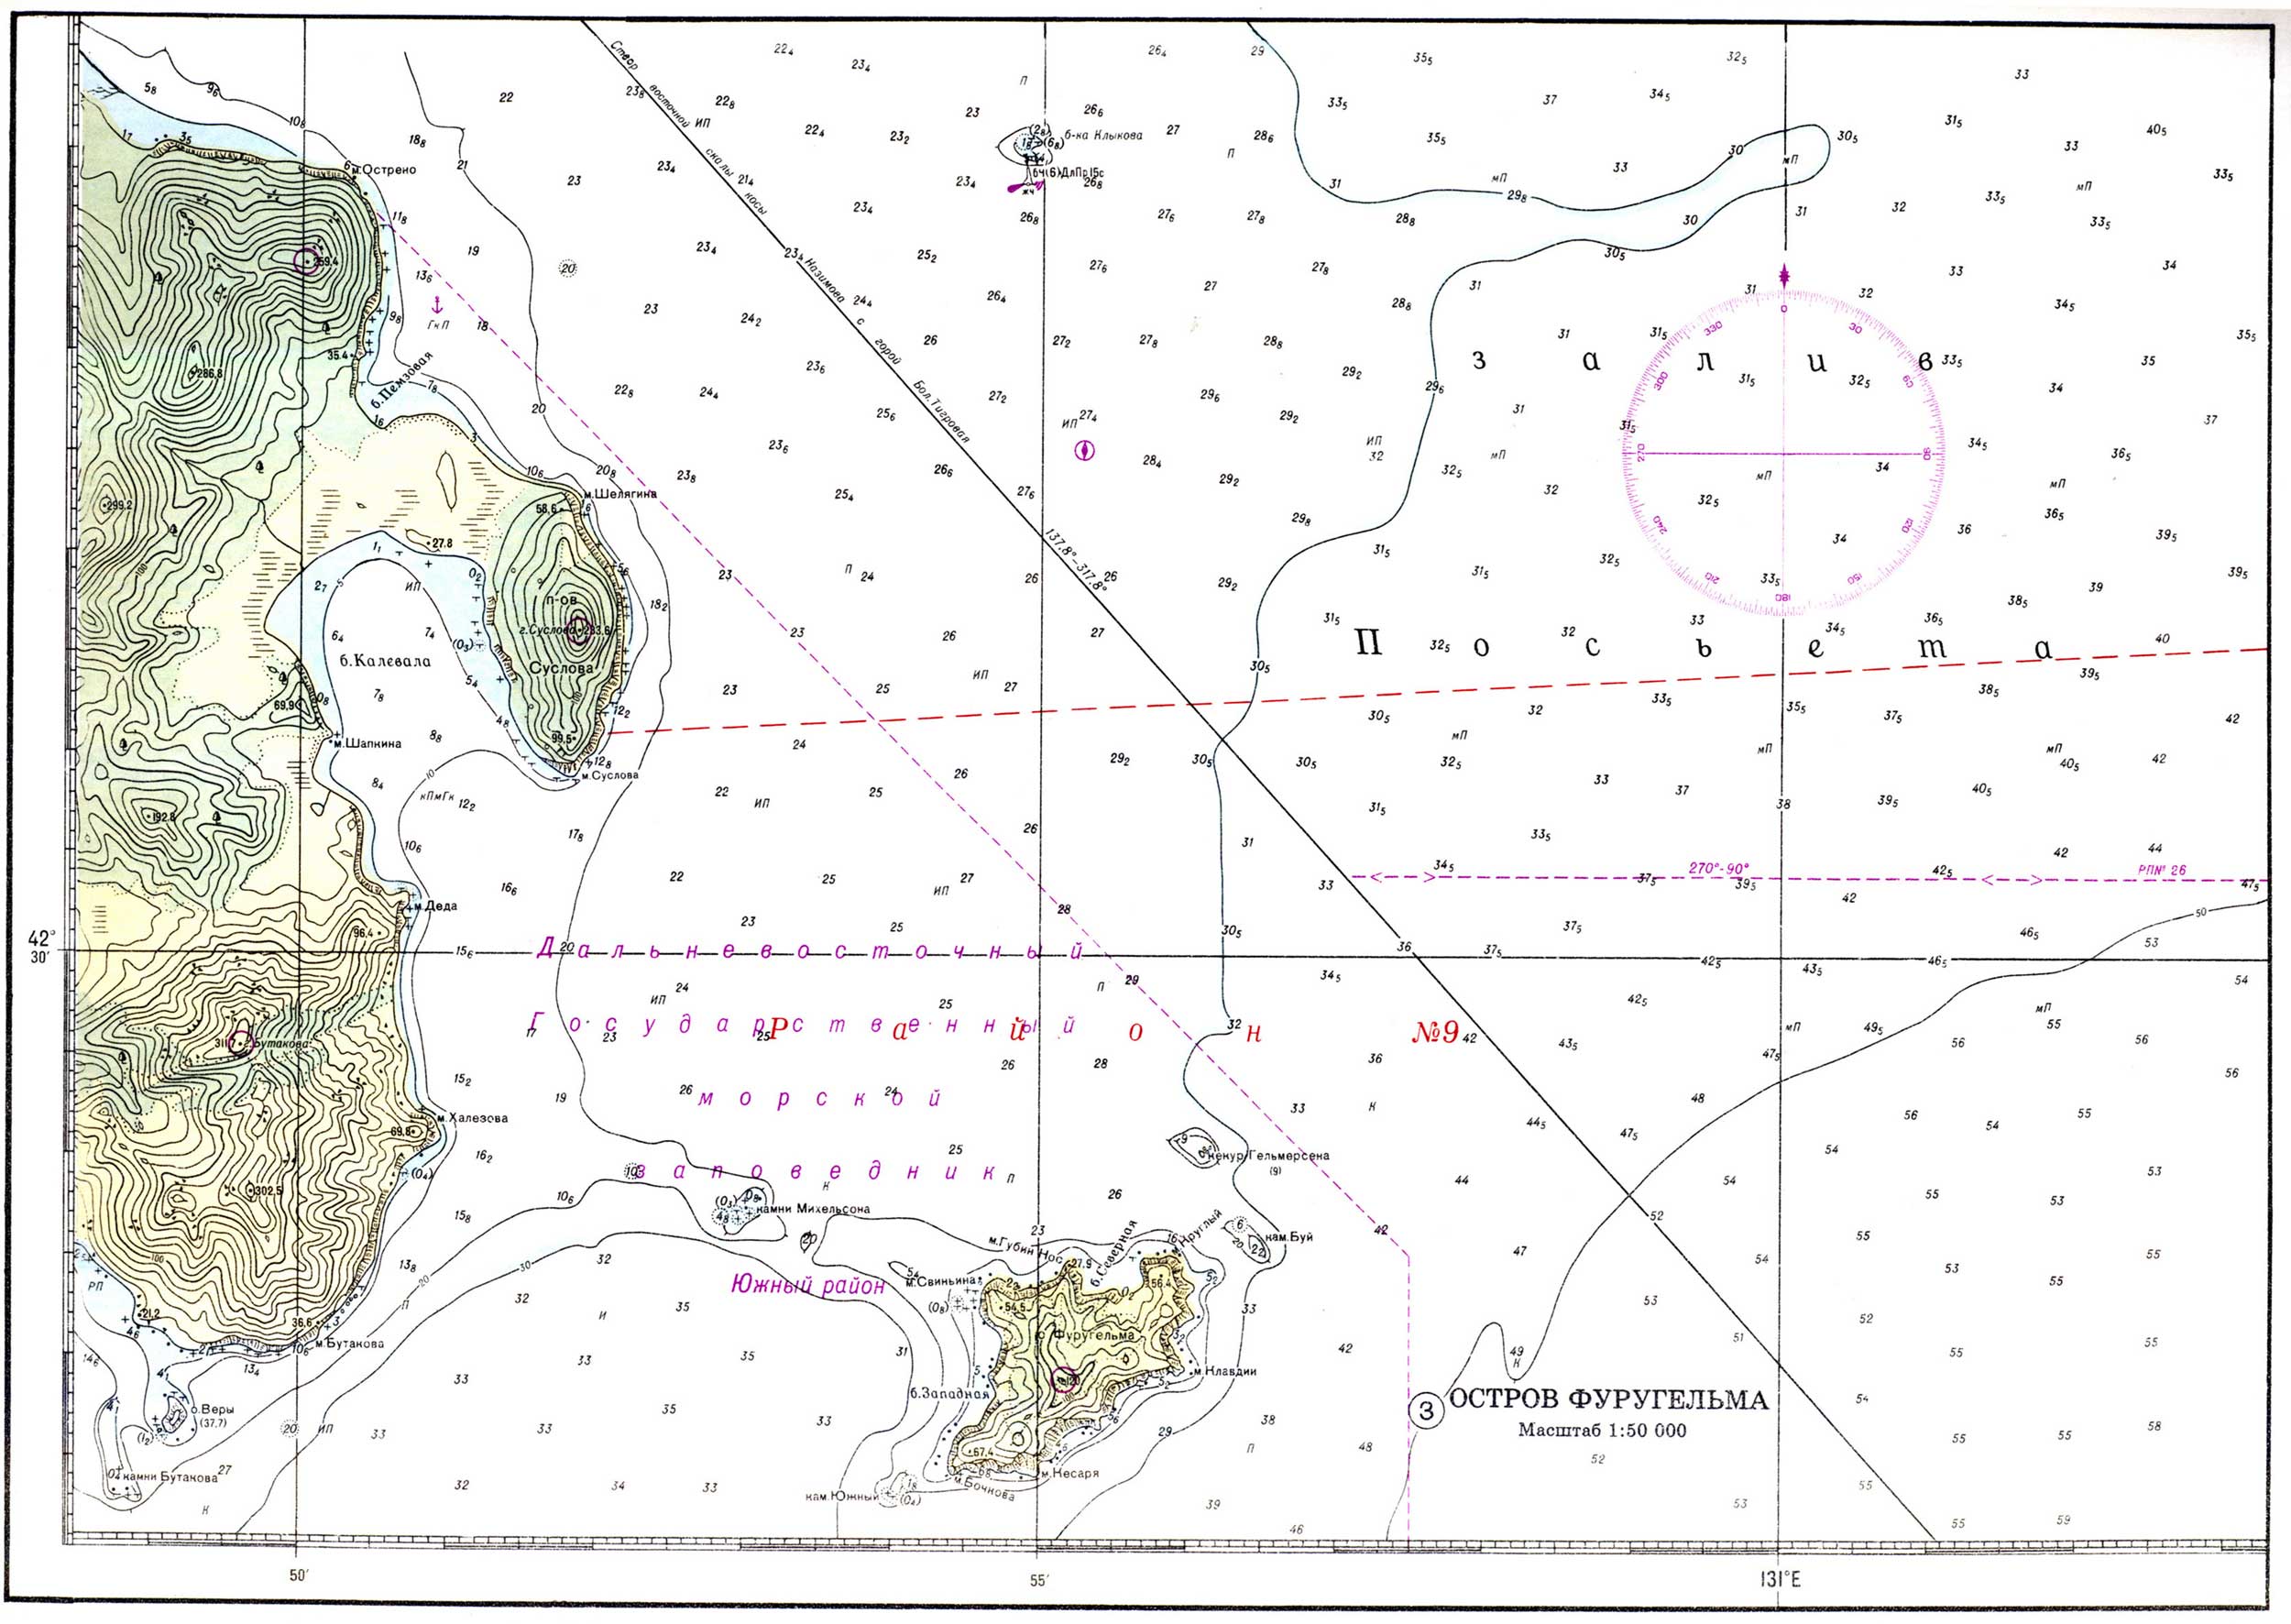 Остров Фуругельма. Масштаб 1:50000